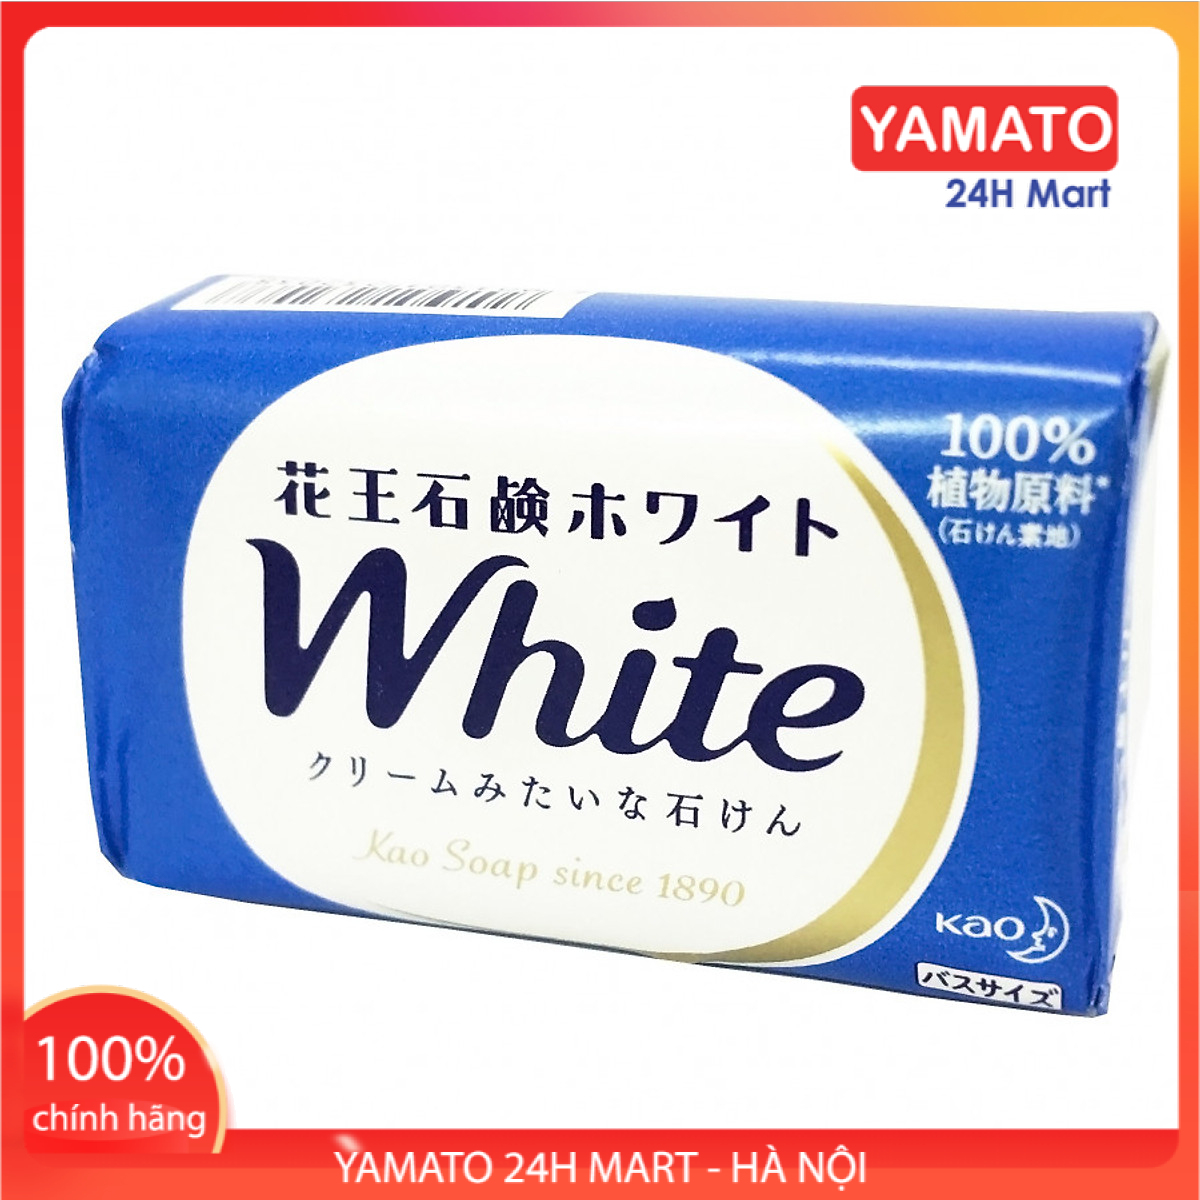 Xà Bông Tắm Kao White Nhật Bản 130g Hương Sữa, Xà Bông Thơm